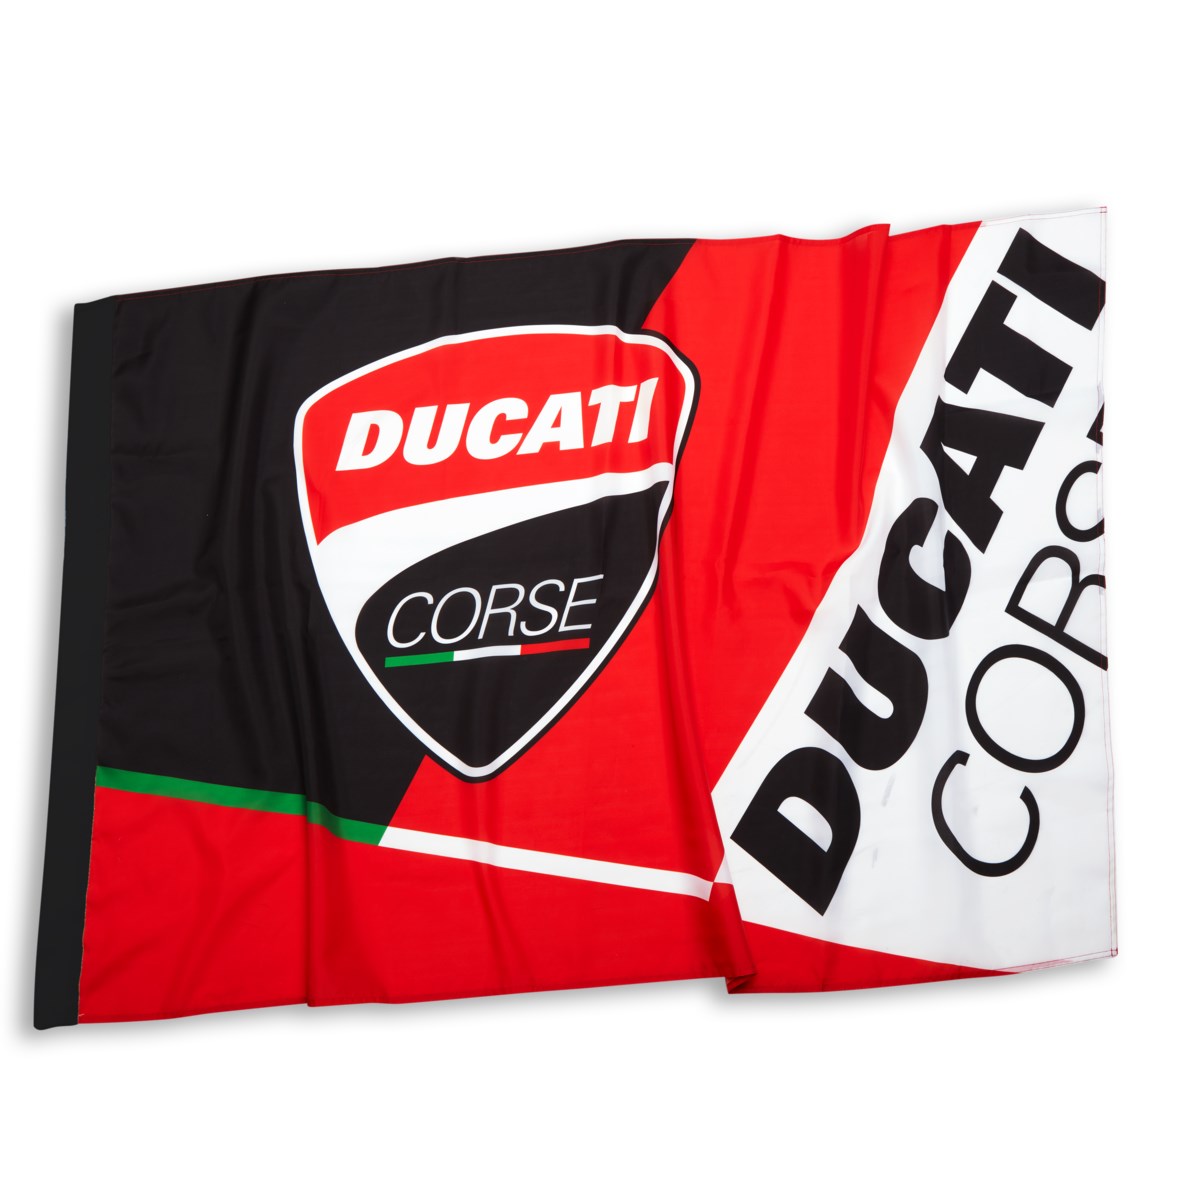 Ducati Corse Adrenaline lippu